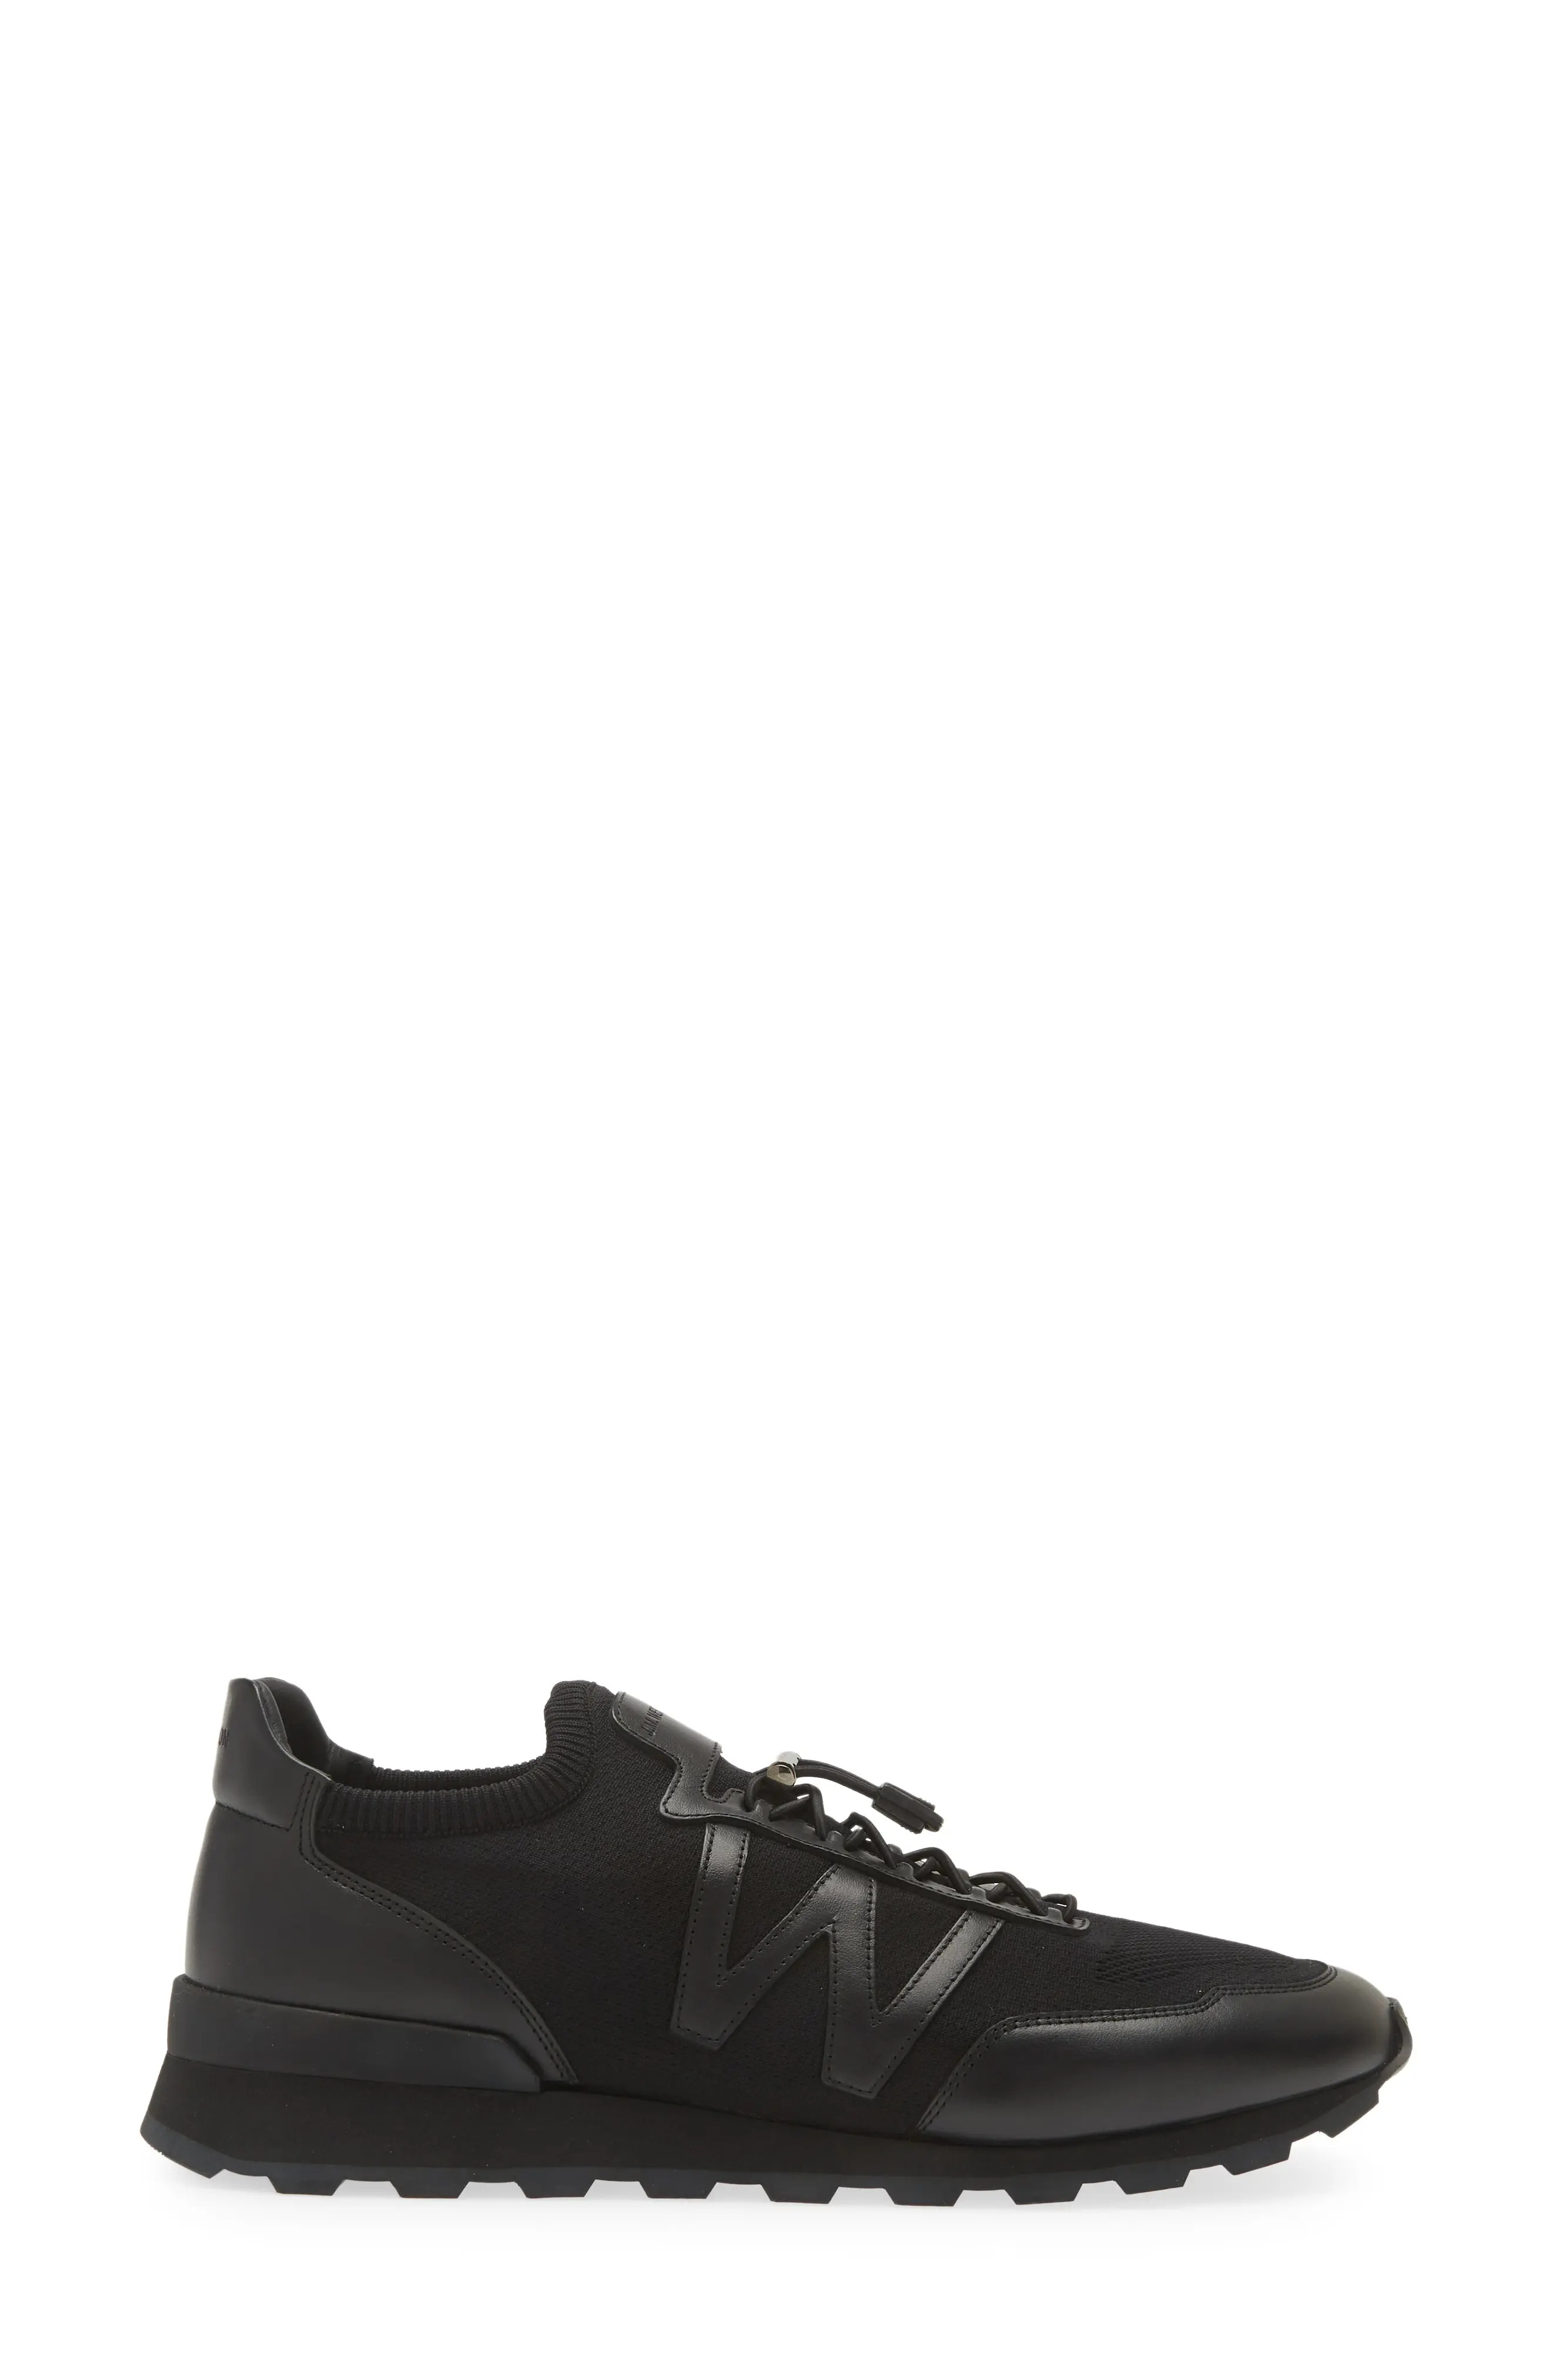 On My Way Knit Sneaker in Black /Black - 3